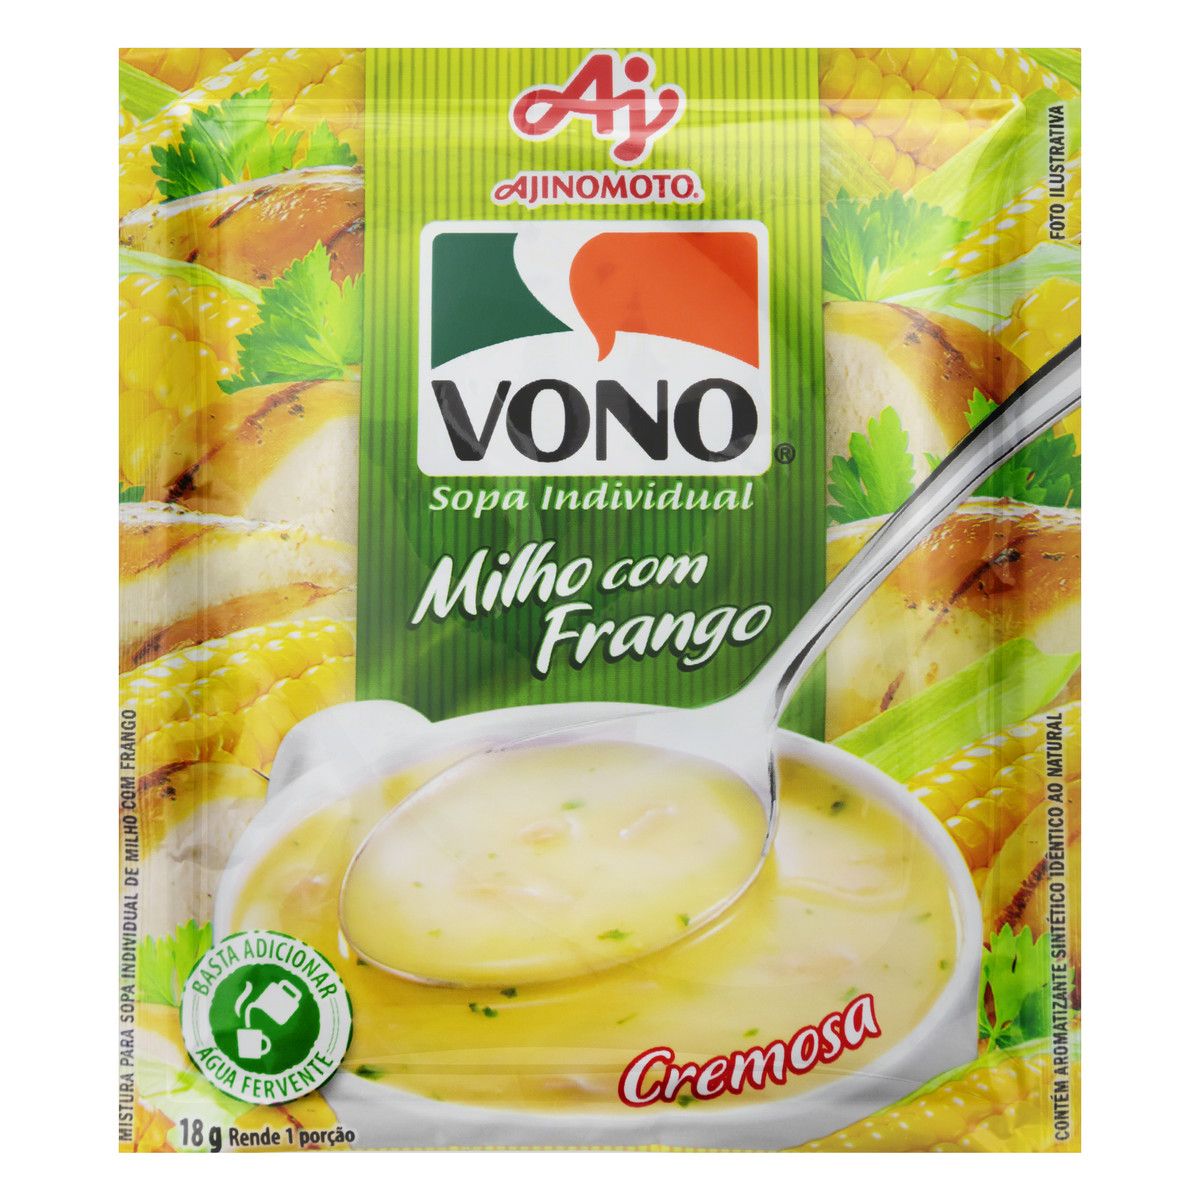 Sopa Individual Cremosa Milho com Frango Vono Pacote 18g